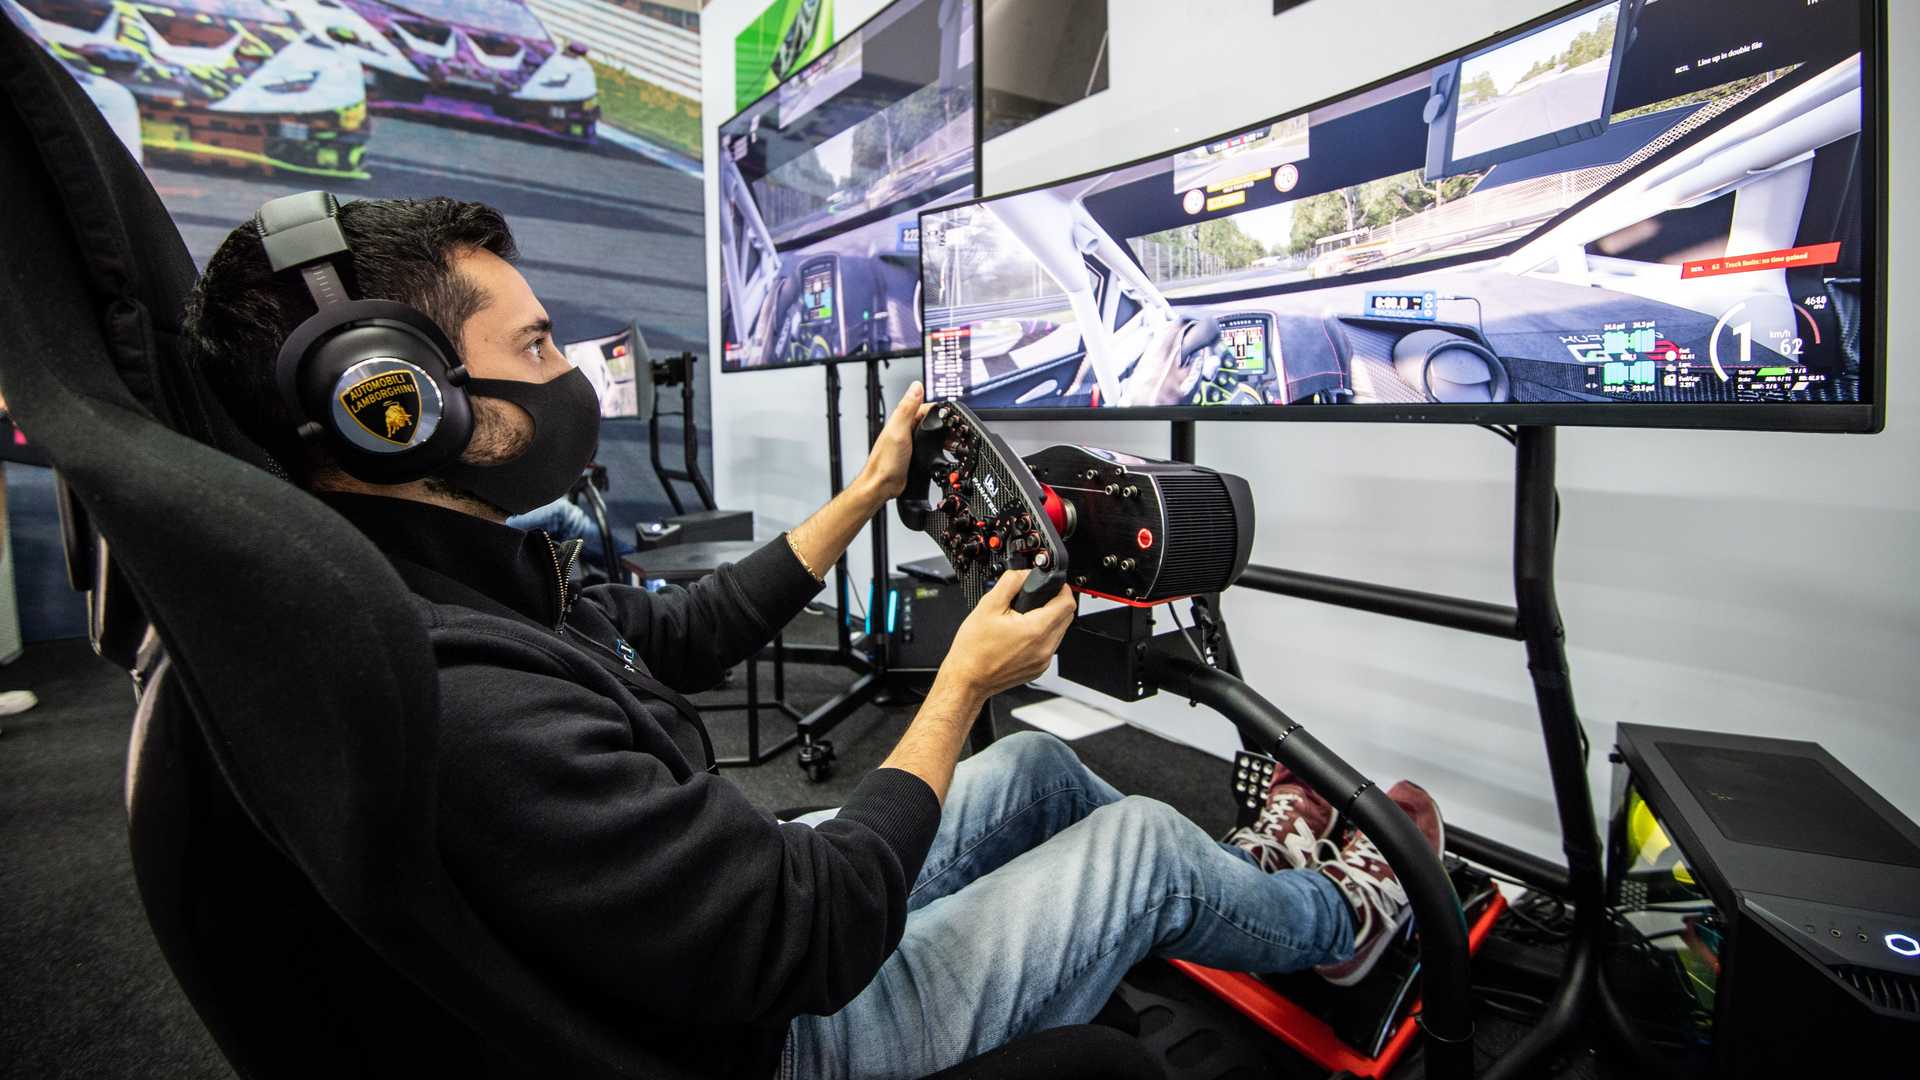 More information about "Speciale in pista: dal virtuale al reale, un giorno da piloti Lamborghini"